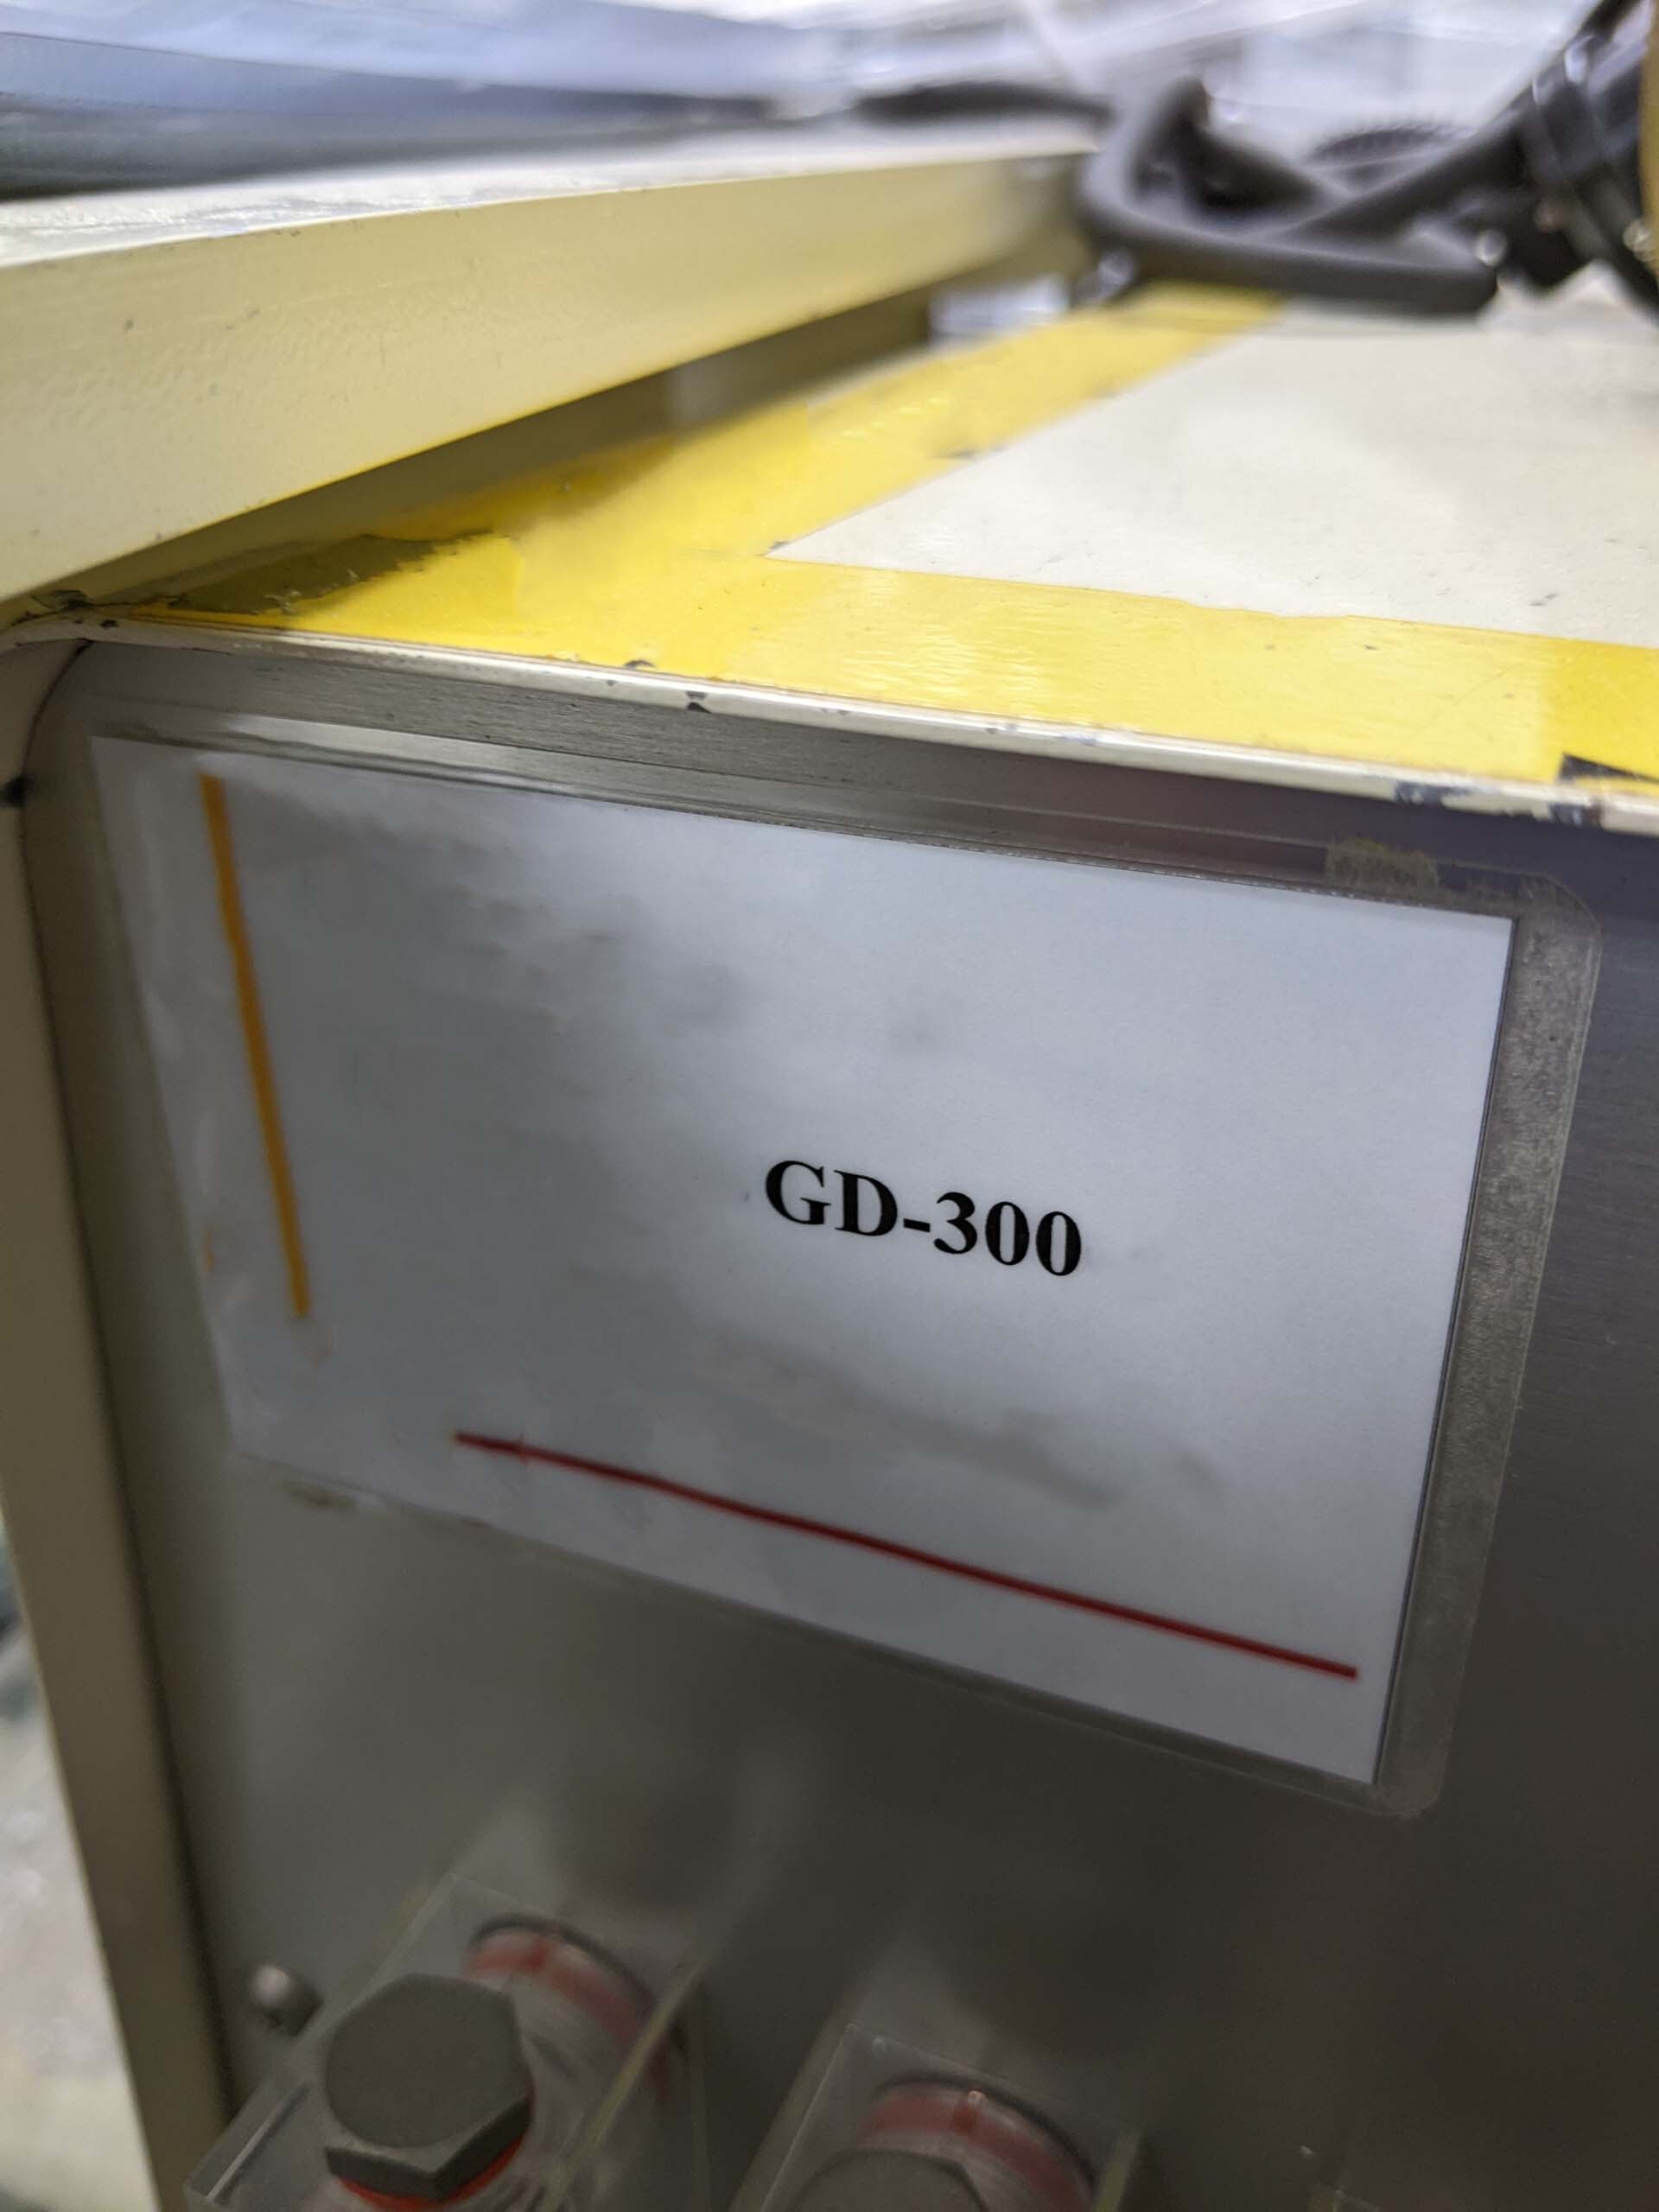 フォト（写真） 使用される NIDEC TOSOK GD-300 販売のために